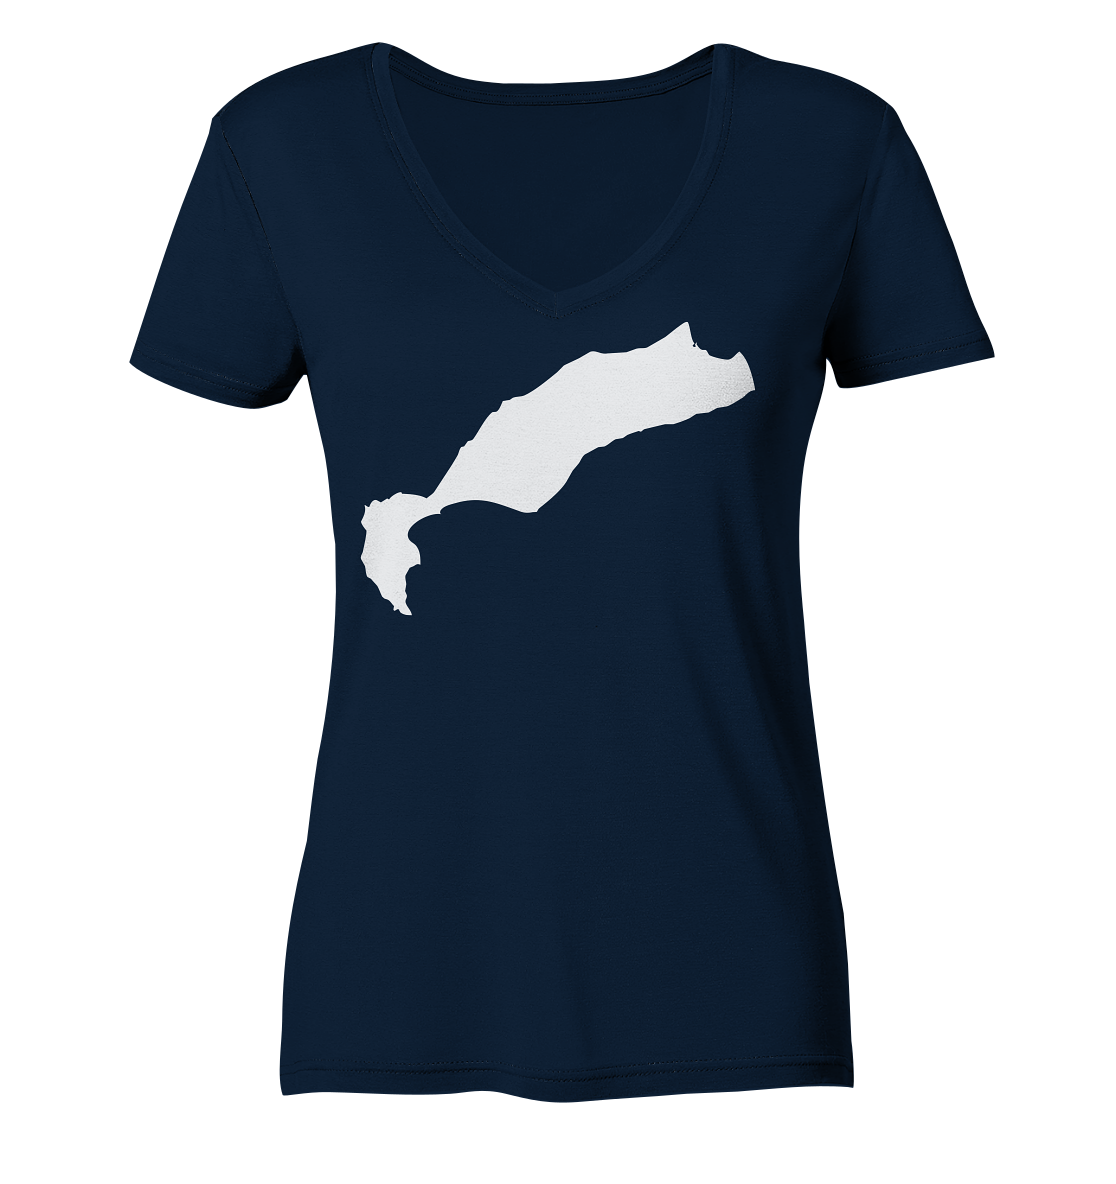 Kos Insel Silhouette - Ladies Organic V-Neck Shirt